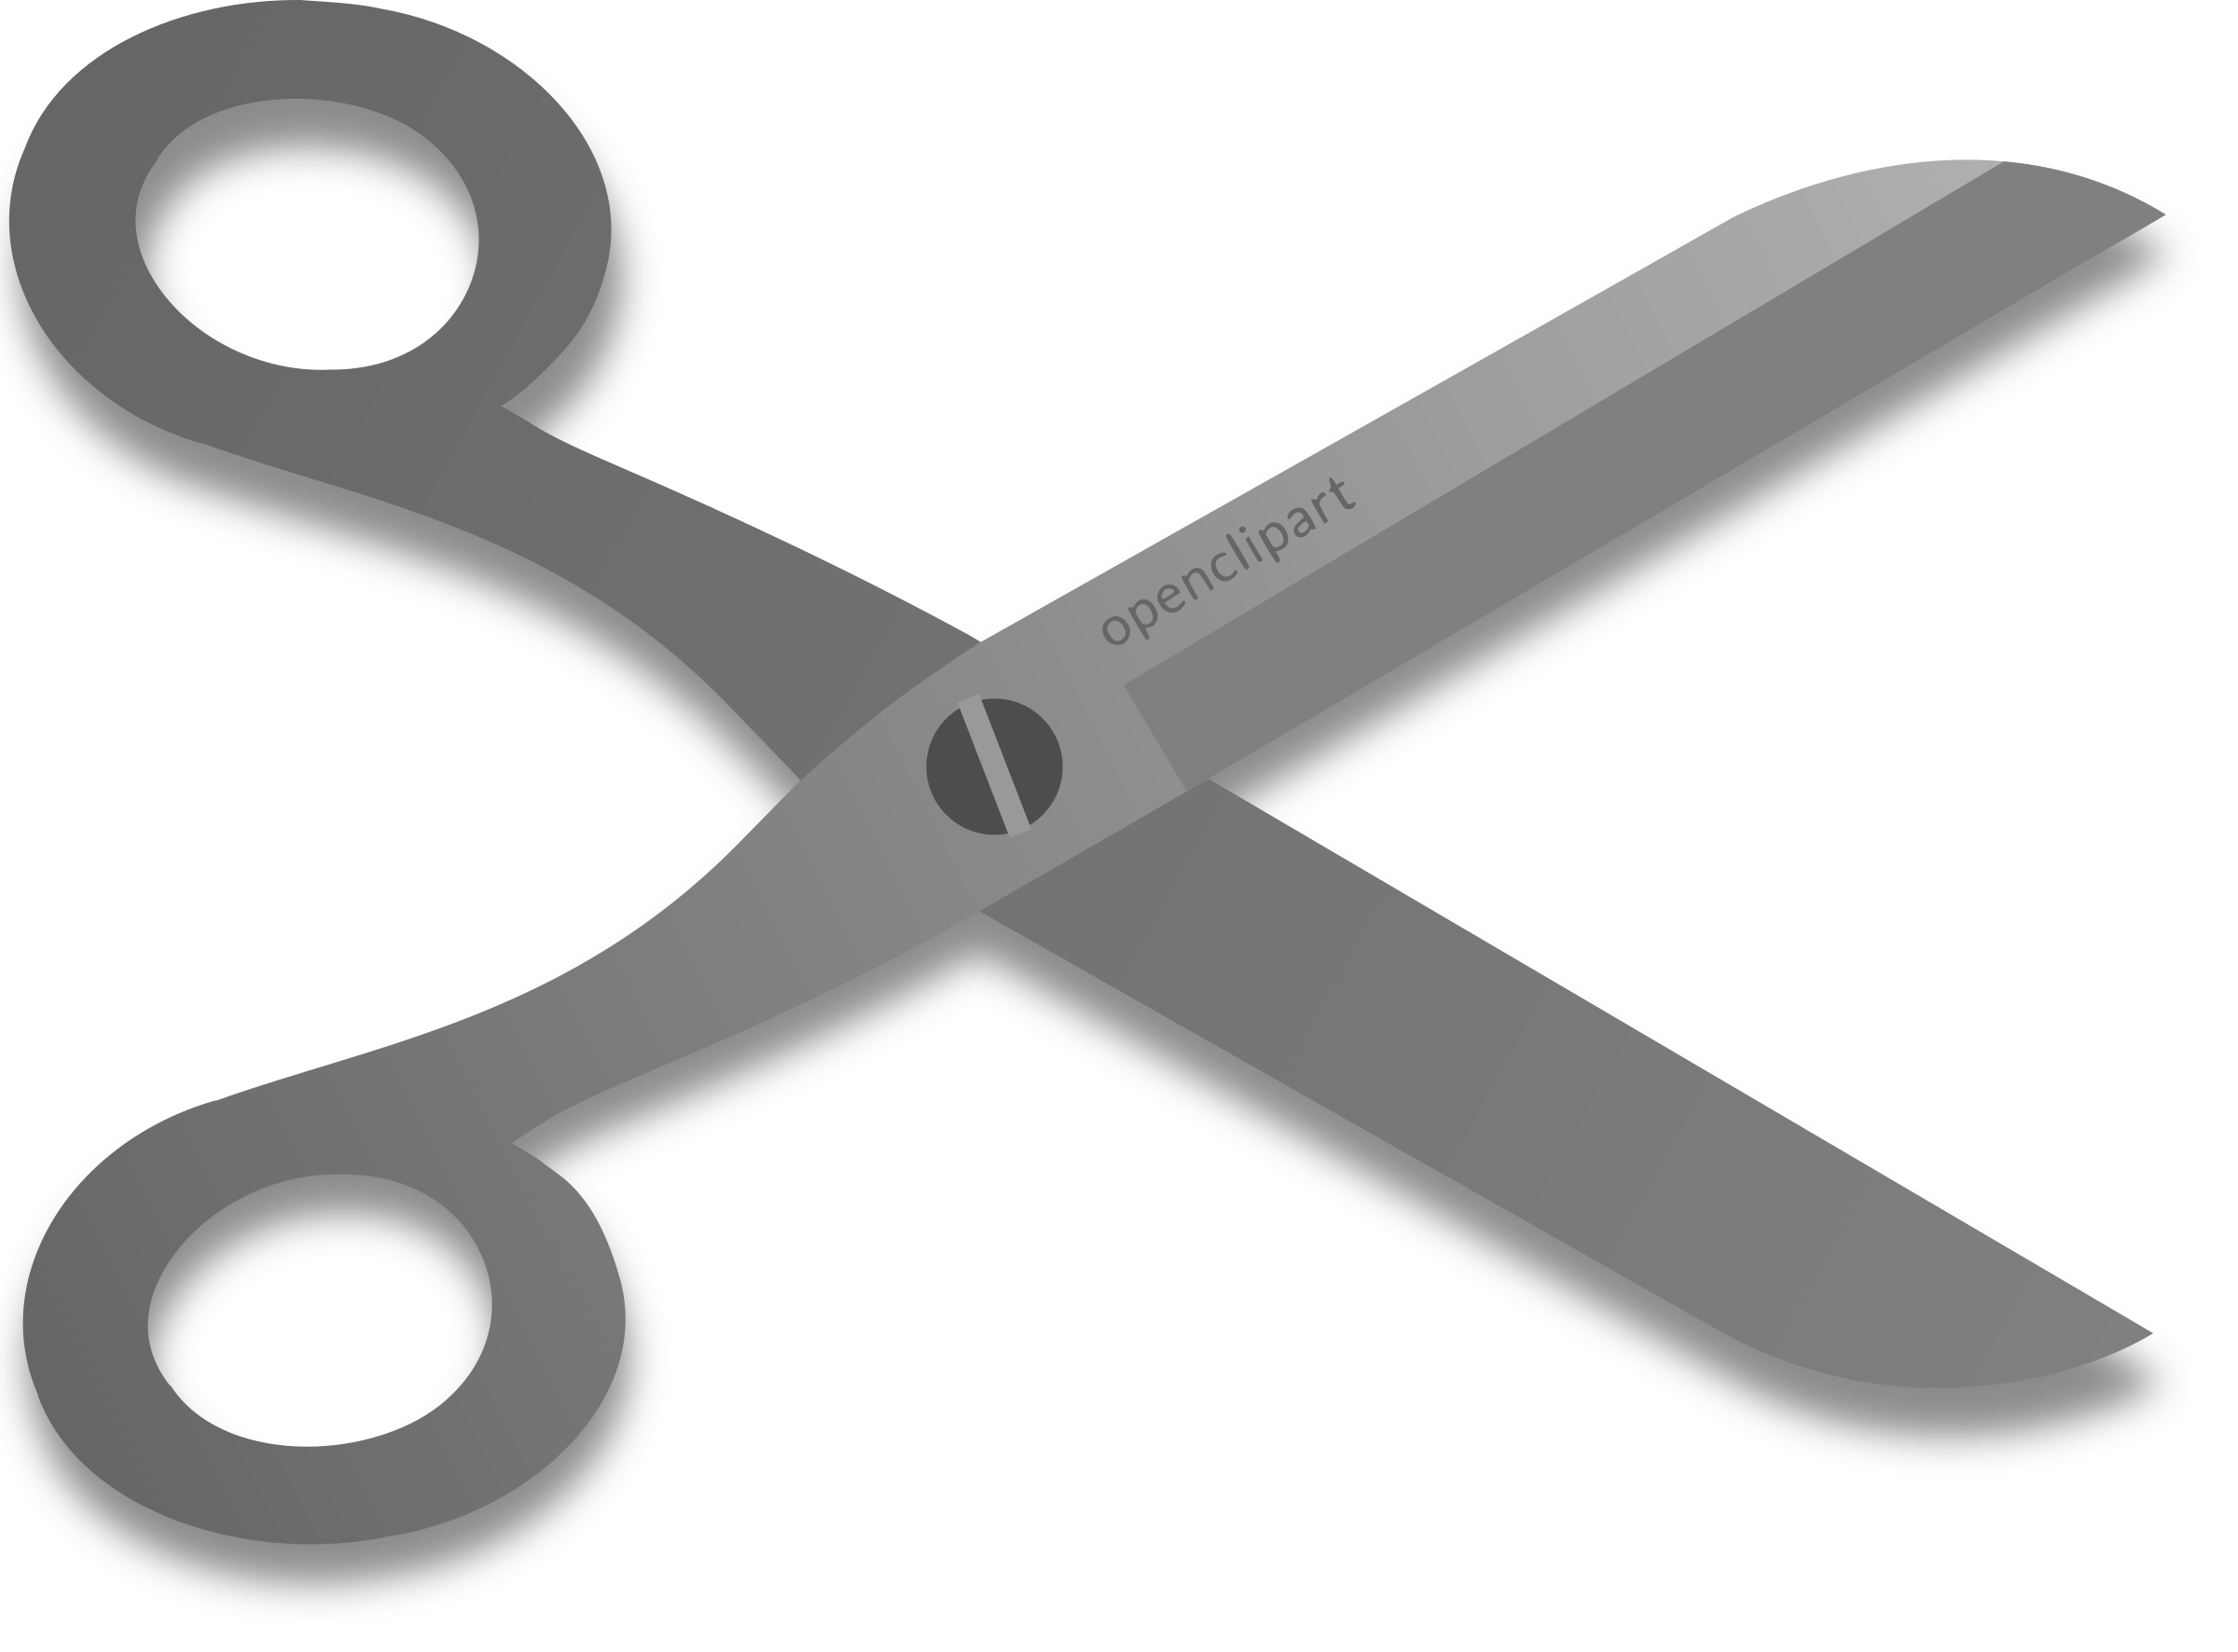 Scissors vector